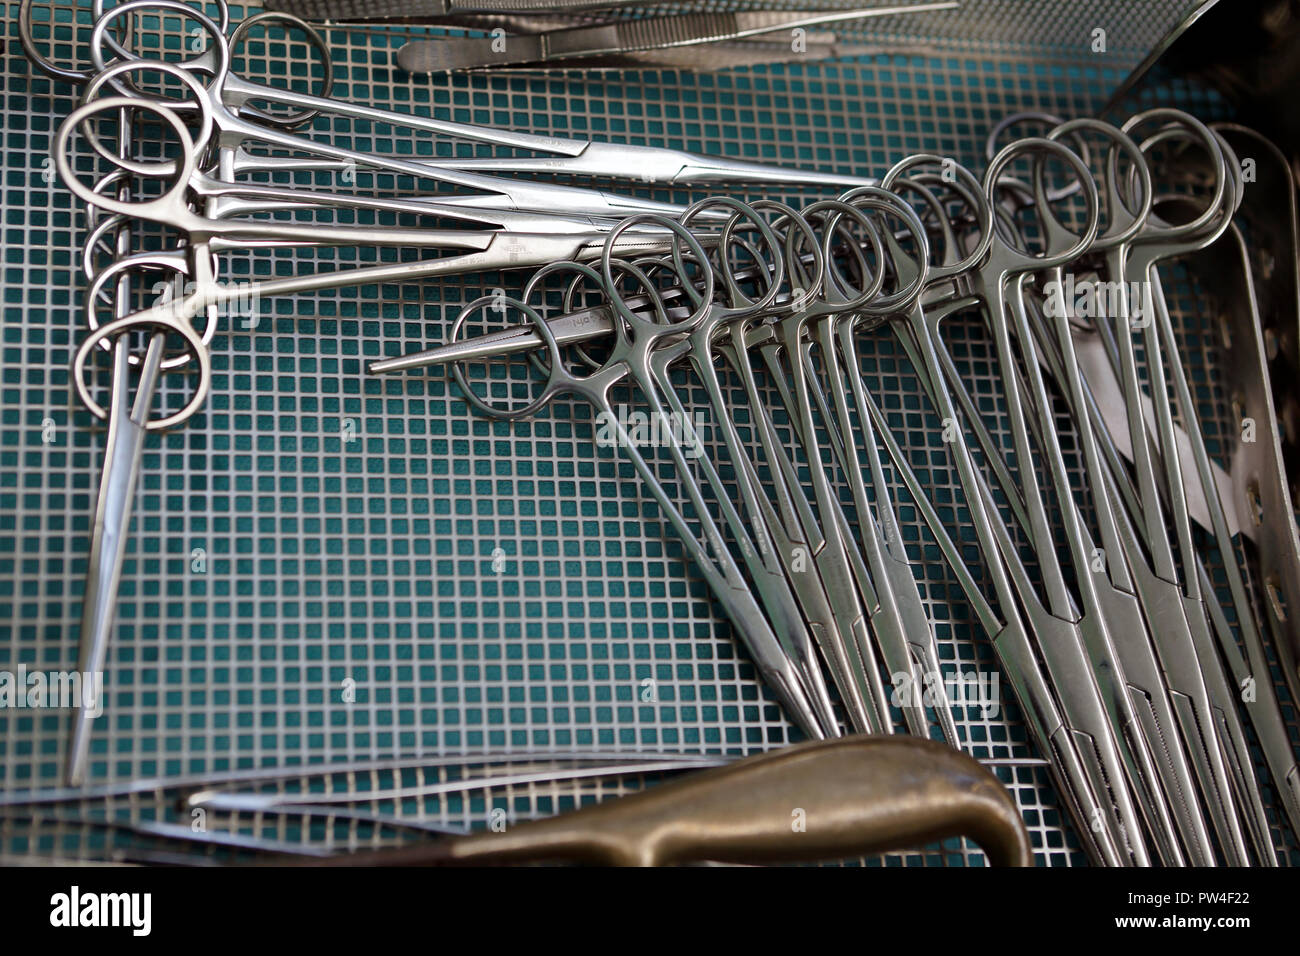 Chirurgische Instrumente, Chirurgie, Gesundheitswesen Stockfoto